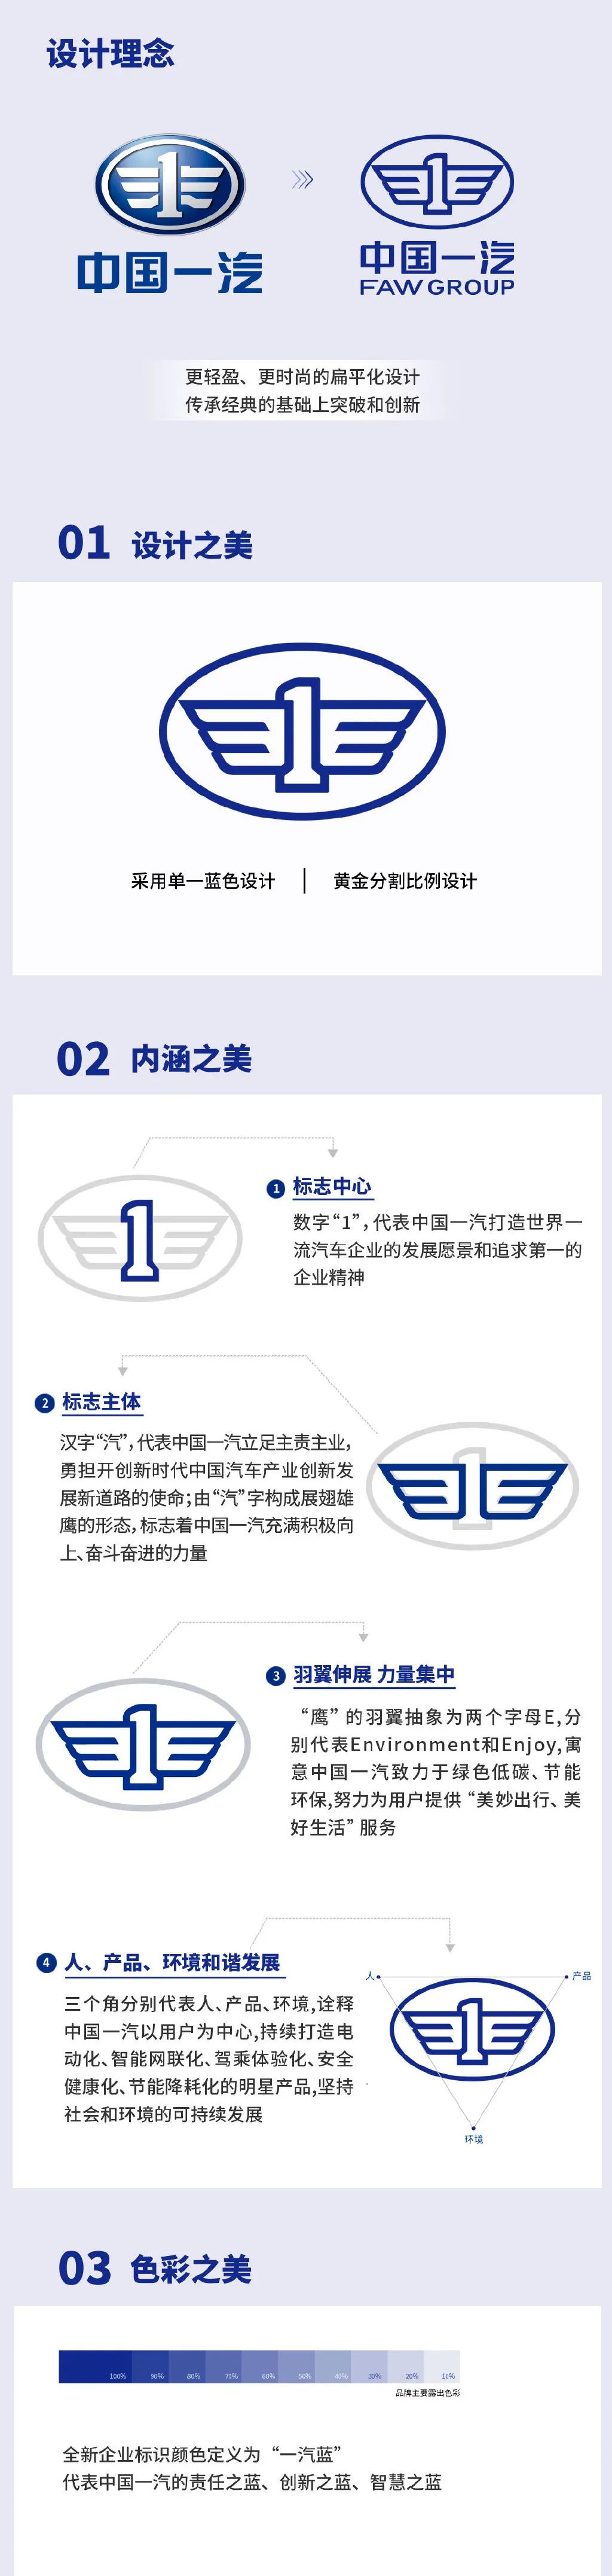 中国一汽logo换logo了，有种莫名的魂斗罗即视感，哈哈哈(图11)